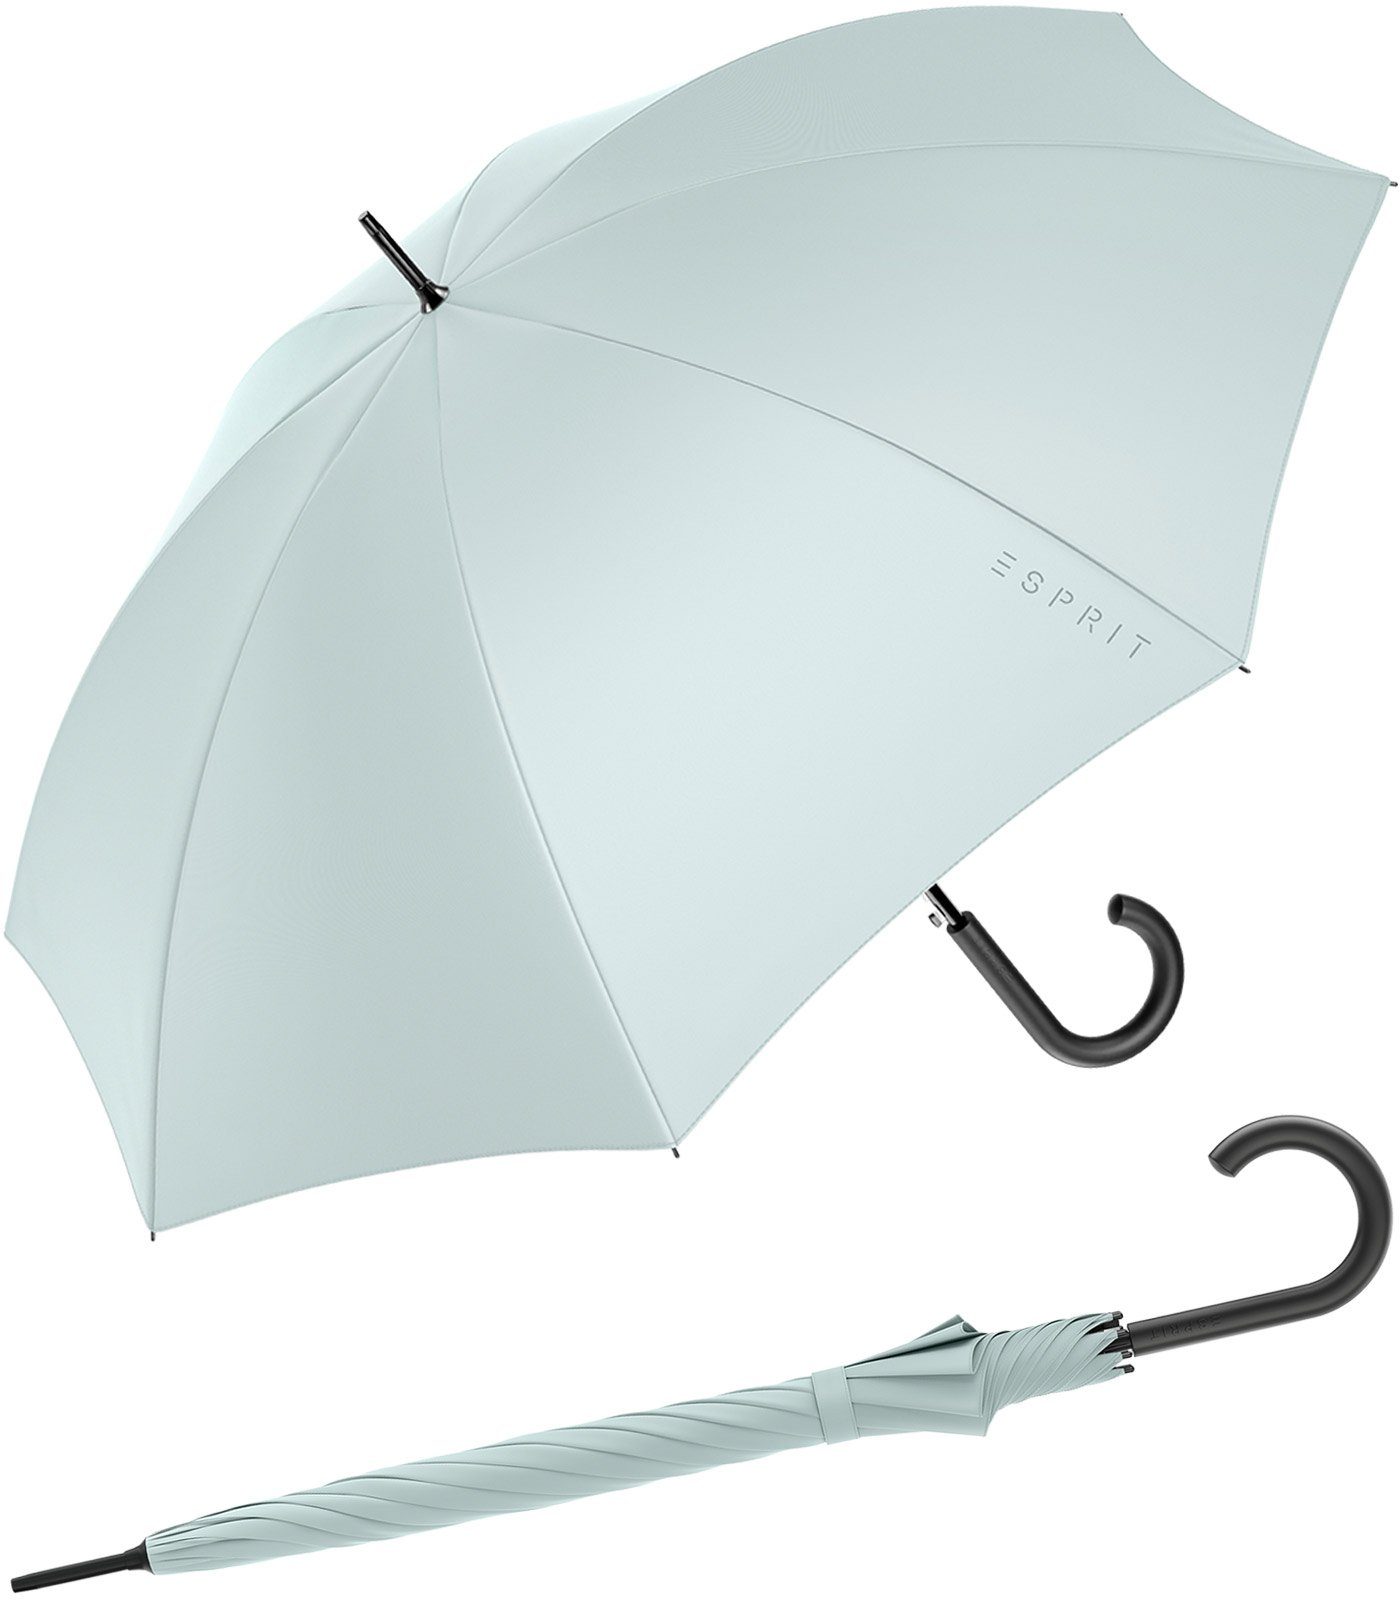 Esprit Stockregenschirm Damen-Regenschirm mit Automatik FJ 2022, groß und stabil, in den Trendfarben graublau